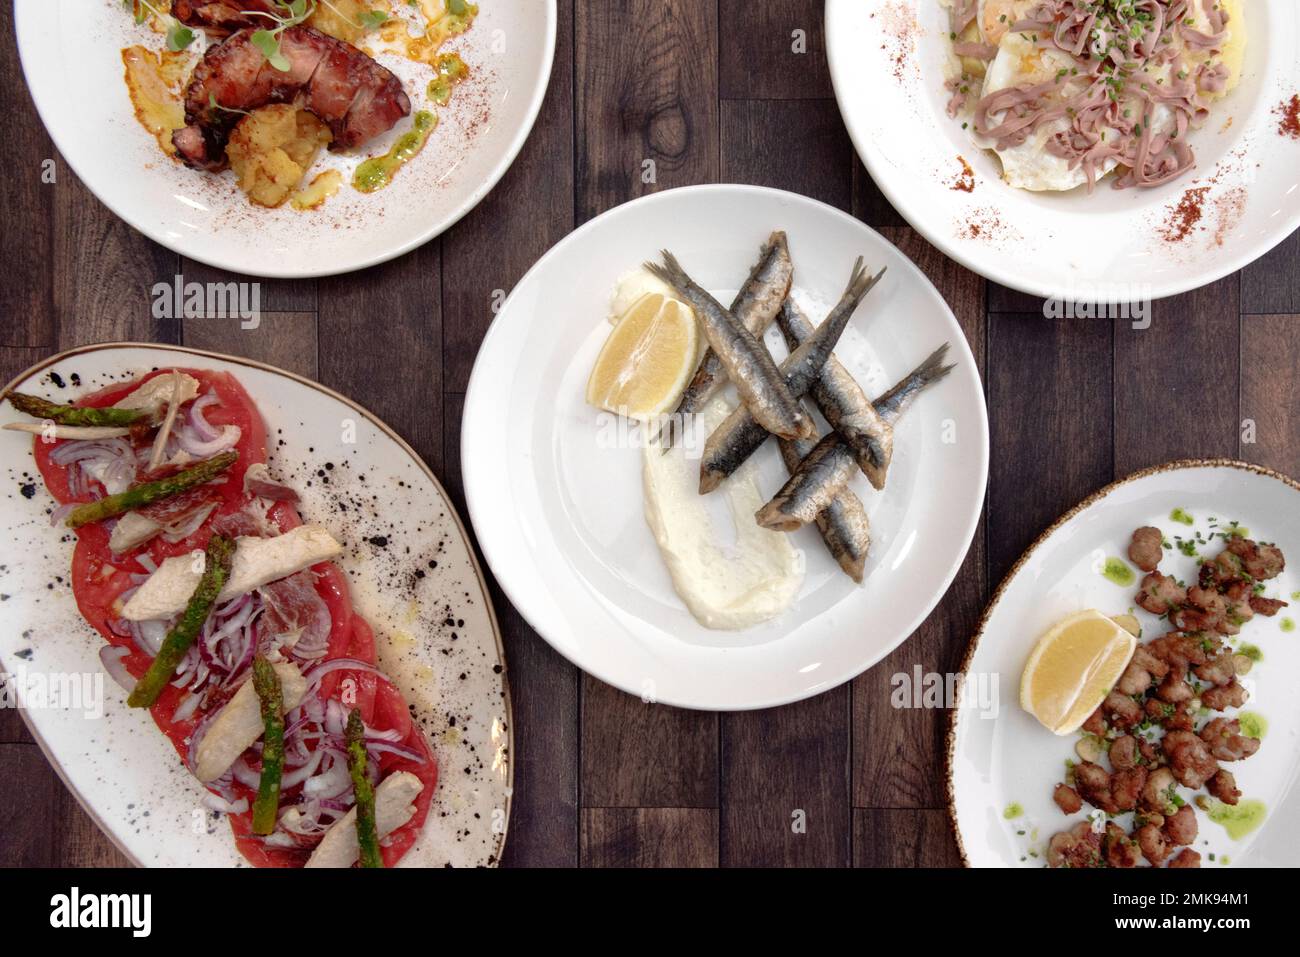 Großartige spanische Tapas mit gebratenen Sardellen mit Mayonnaise, gebratenen Criadillas, galicischem Kraken und Thunfisch-Bauch-Salat mit Tomaten und Zwiebeln Stockfoto